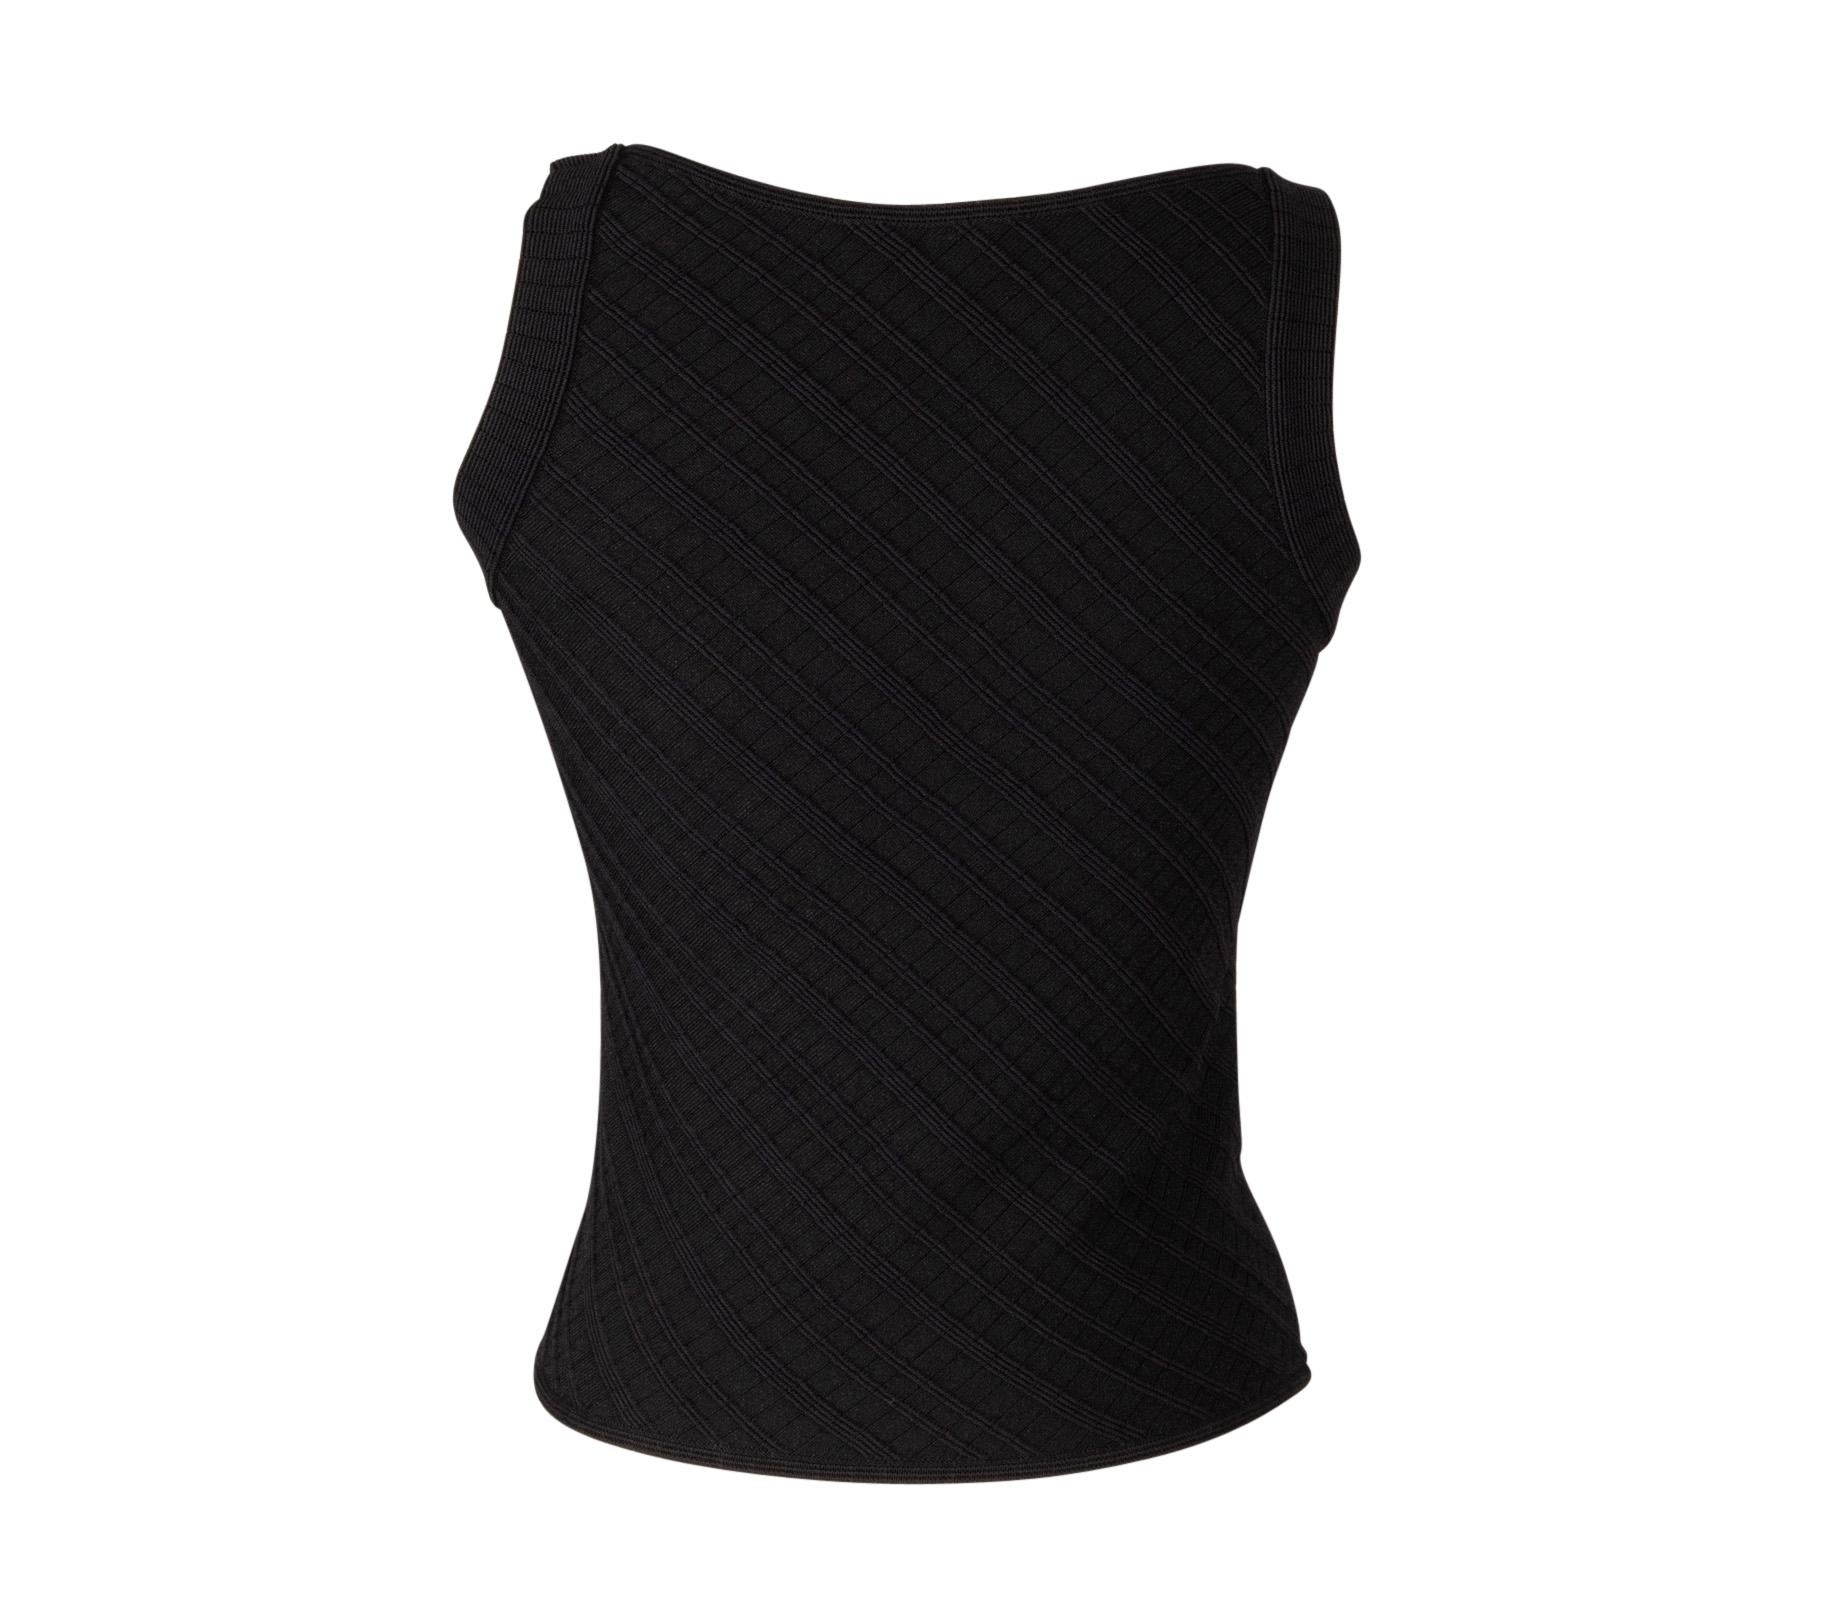 Giorgio Armani Top Black Textured Fabric Classic  40 / 6 For Sale 1